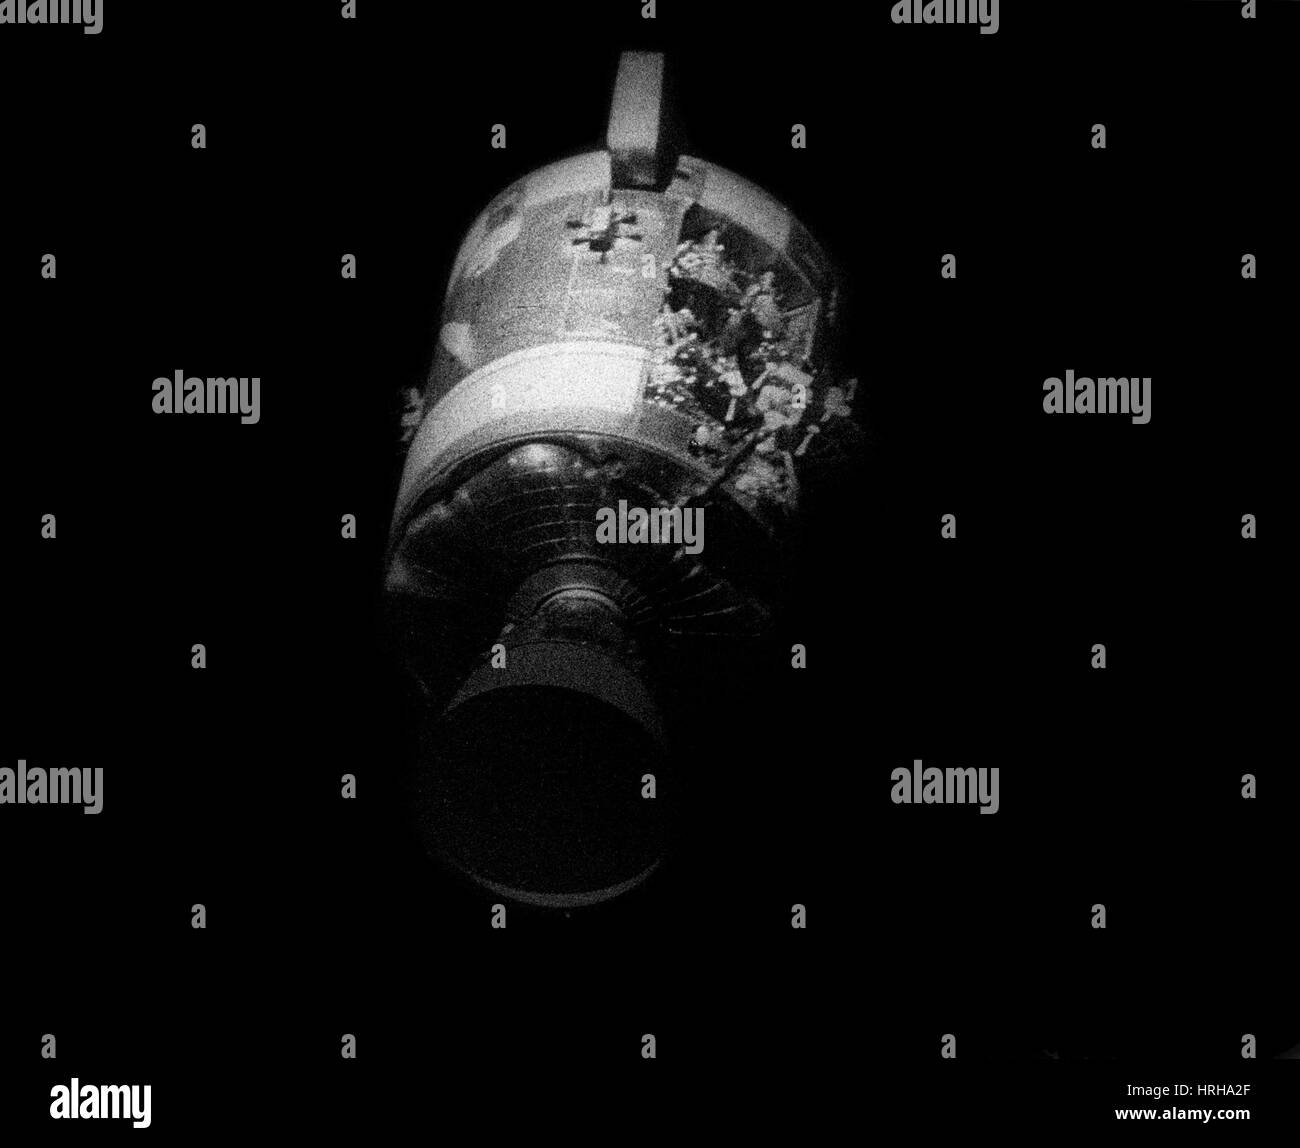 Le module de service Apollo 13 endommagé Banque D'Images